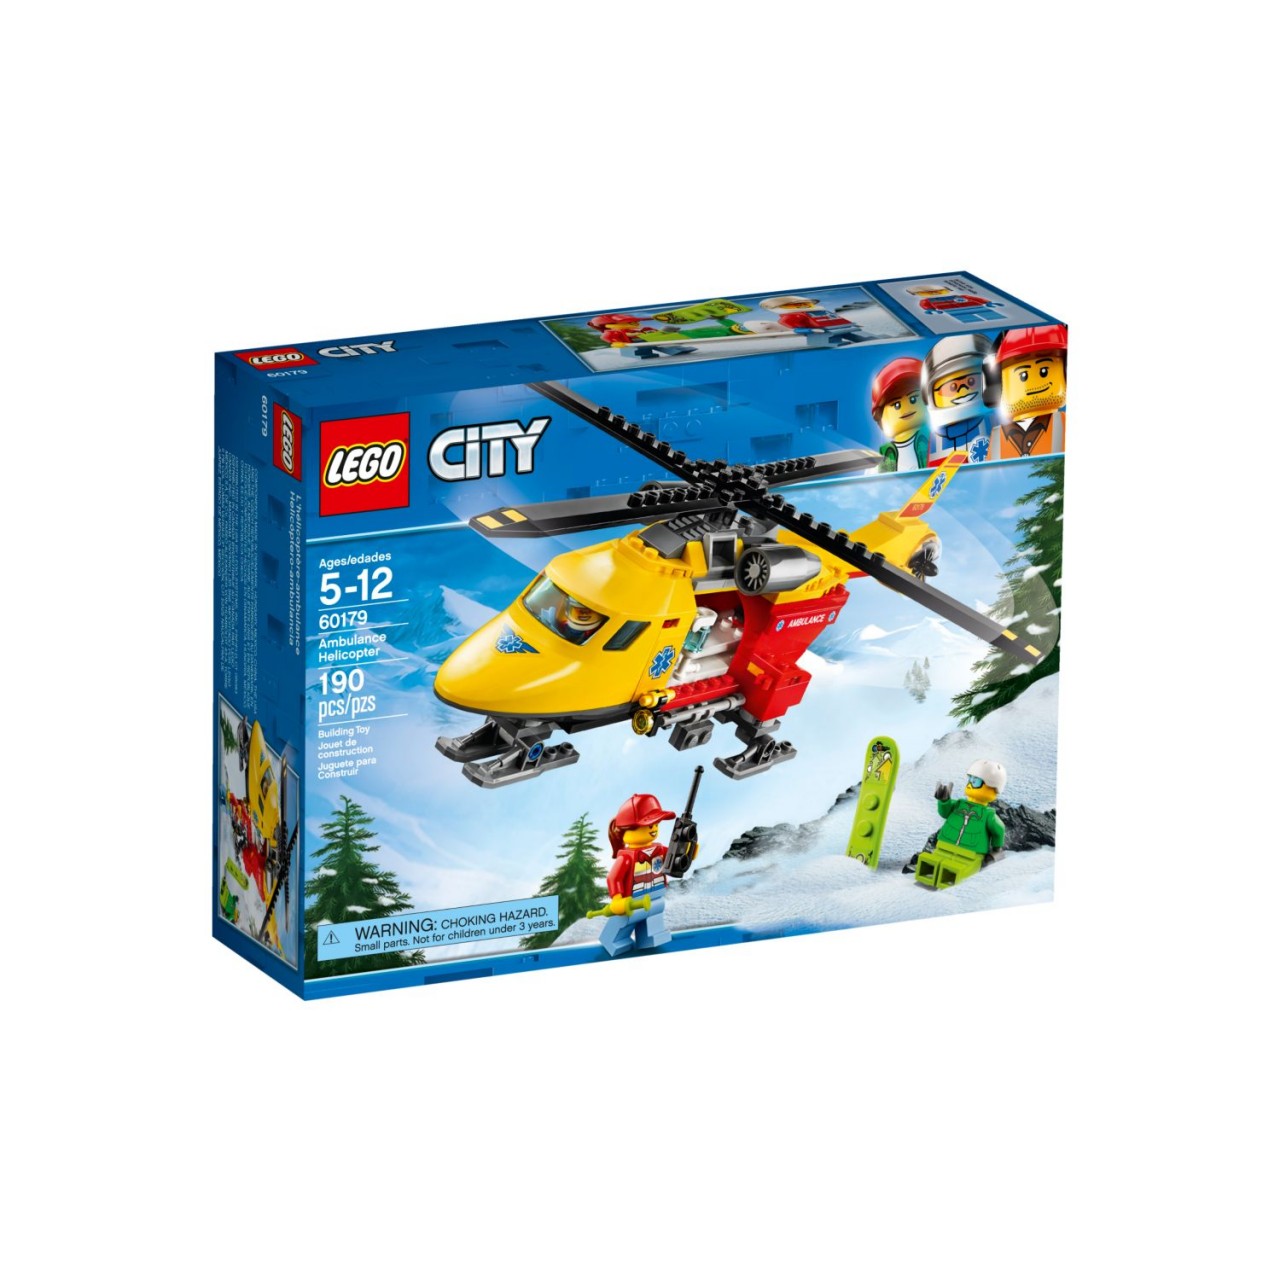 LEGO CITY 60179 Rettungshubschrauber